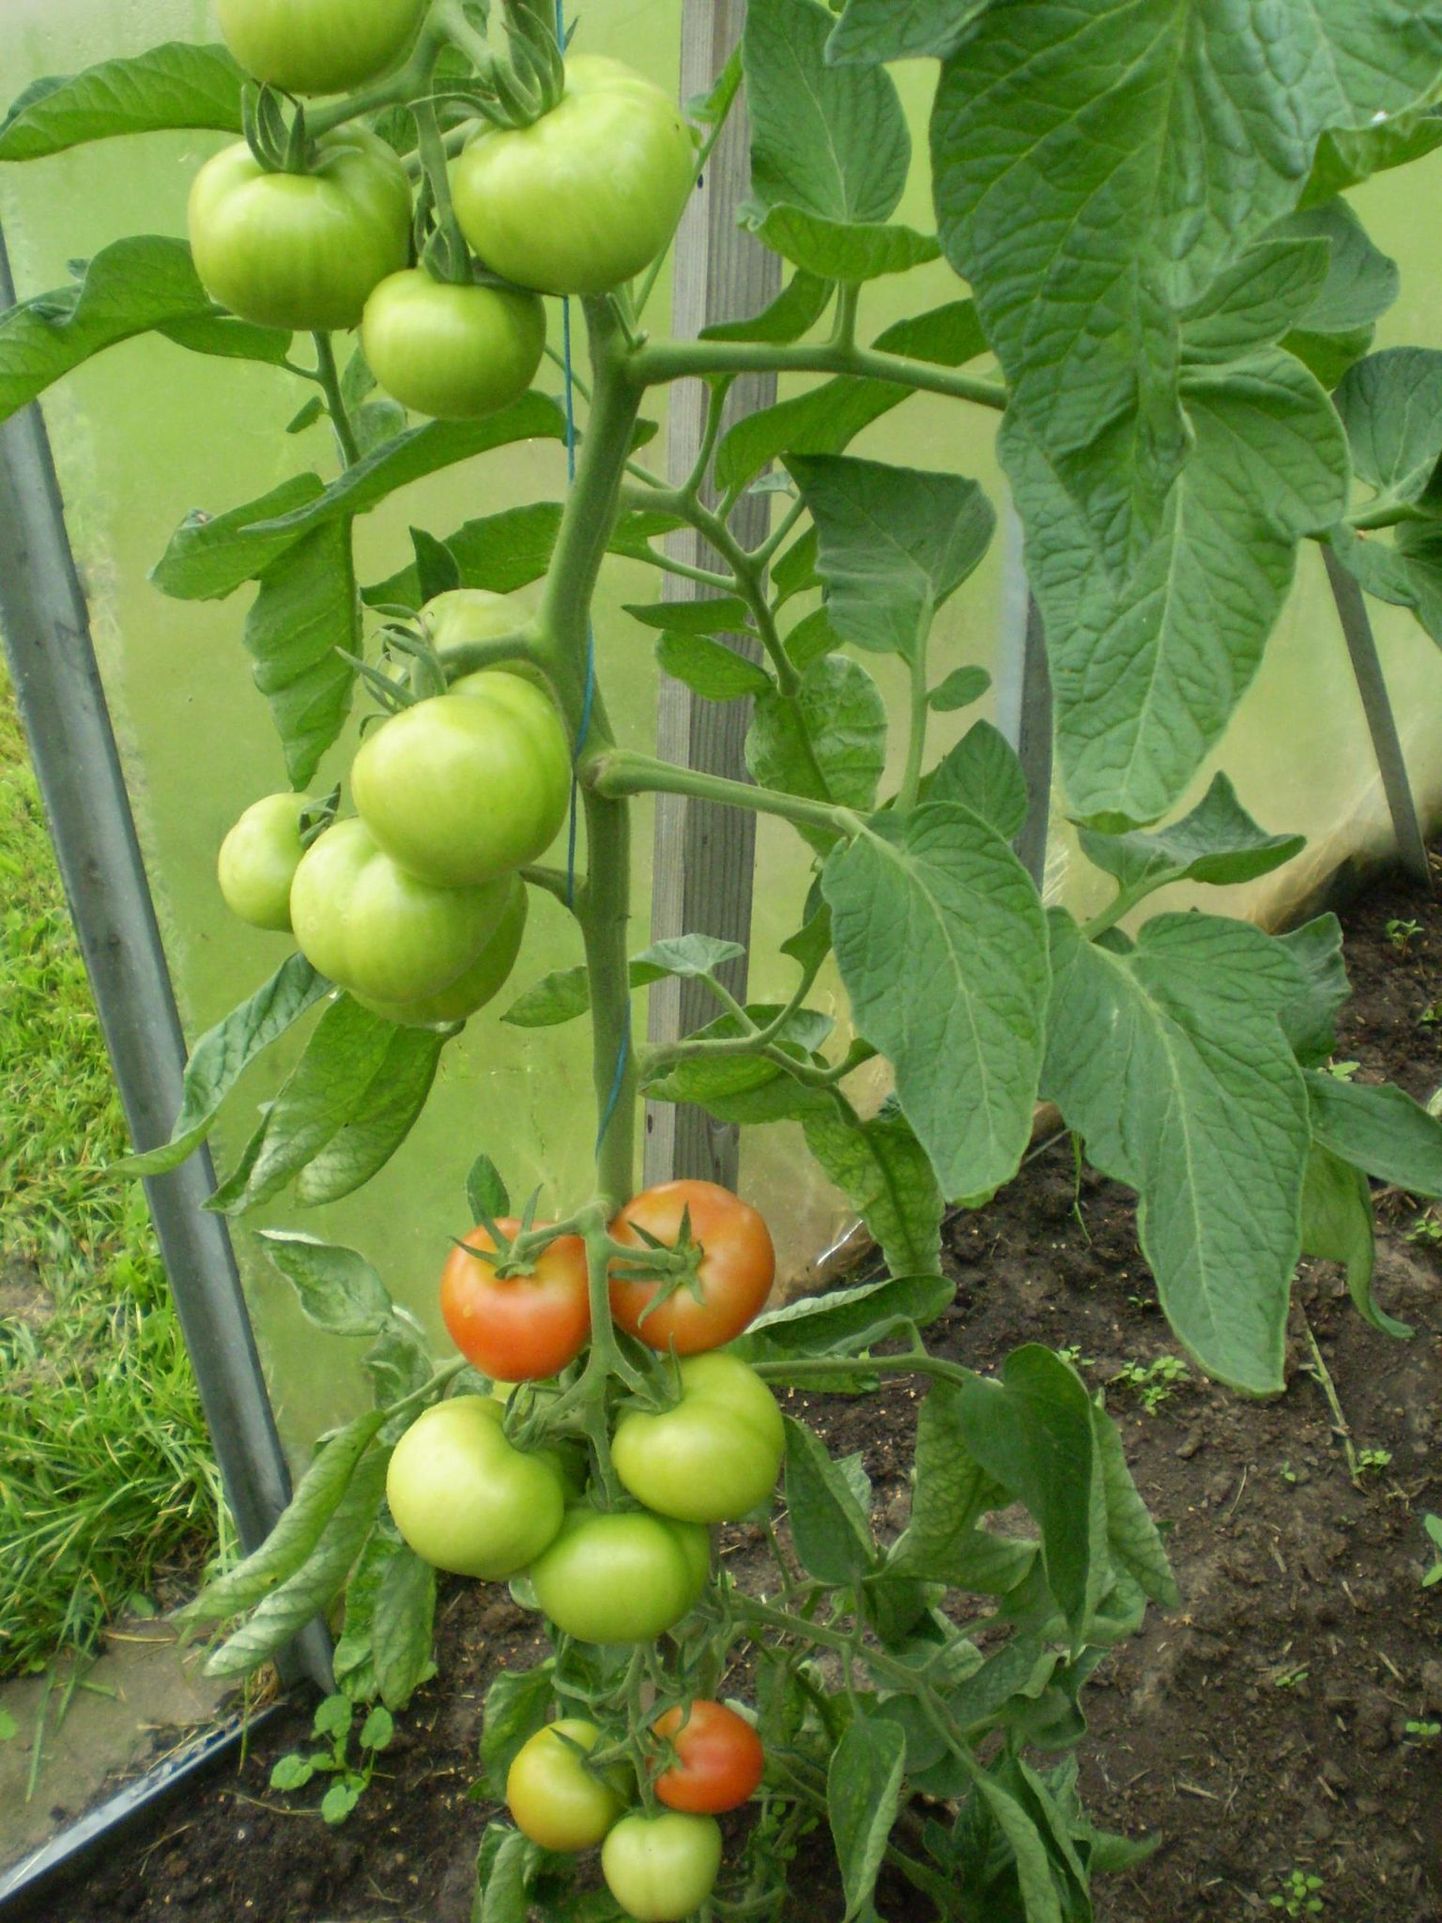 Tomatikobarat toidavad need lehed, mille vahel kobar asub.